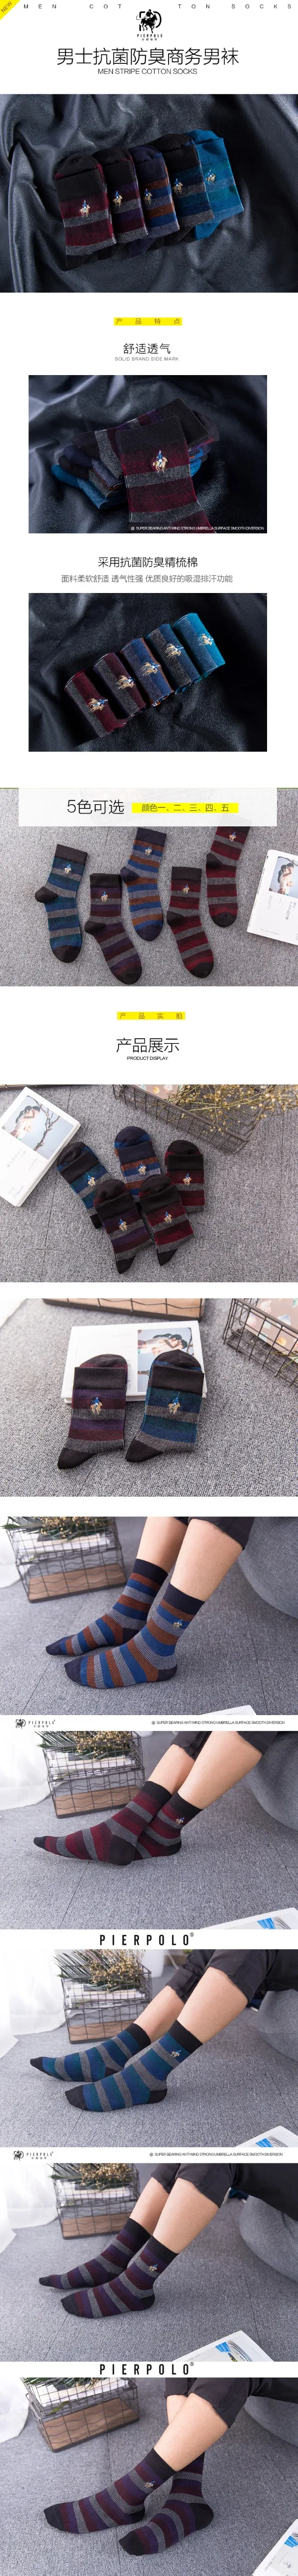 Ограниченная серия, мужские носки, новинка, Zhengpin Pier Polo, мужские носки, Осень-зима, чёсаный хлопок, в полоску, мужские, от производителя